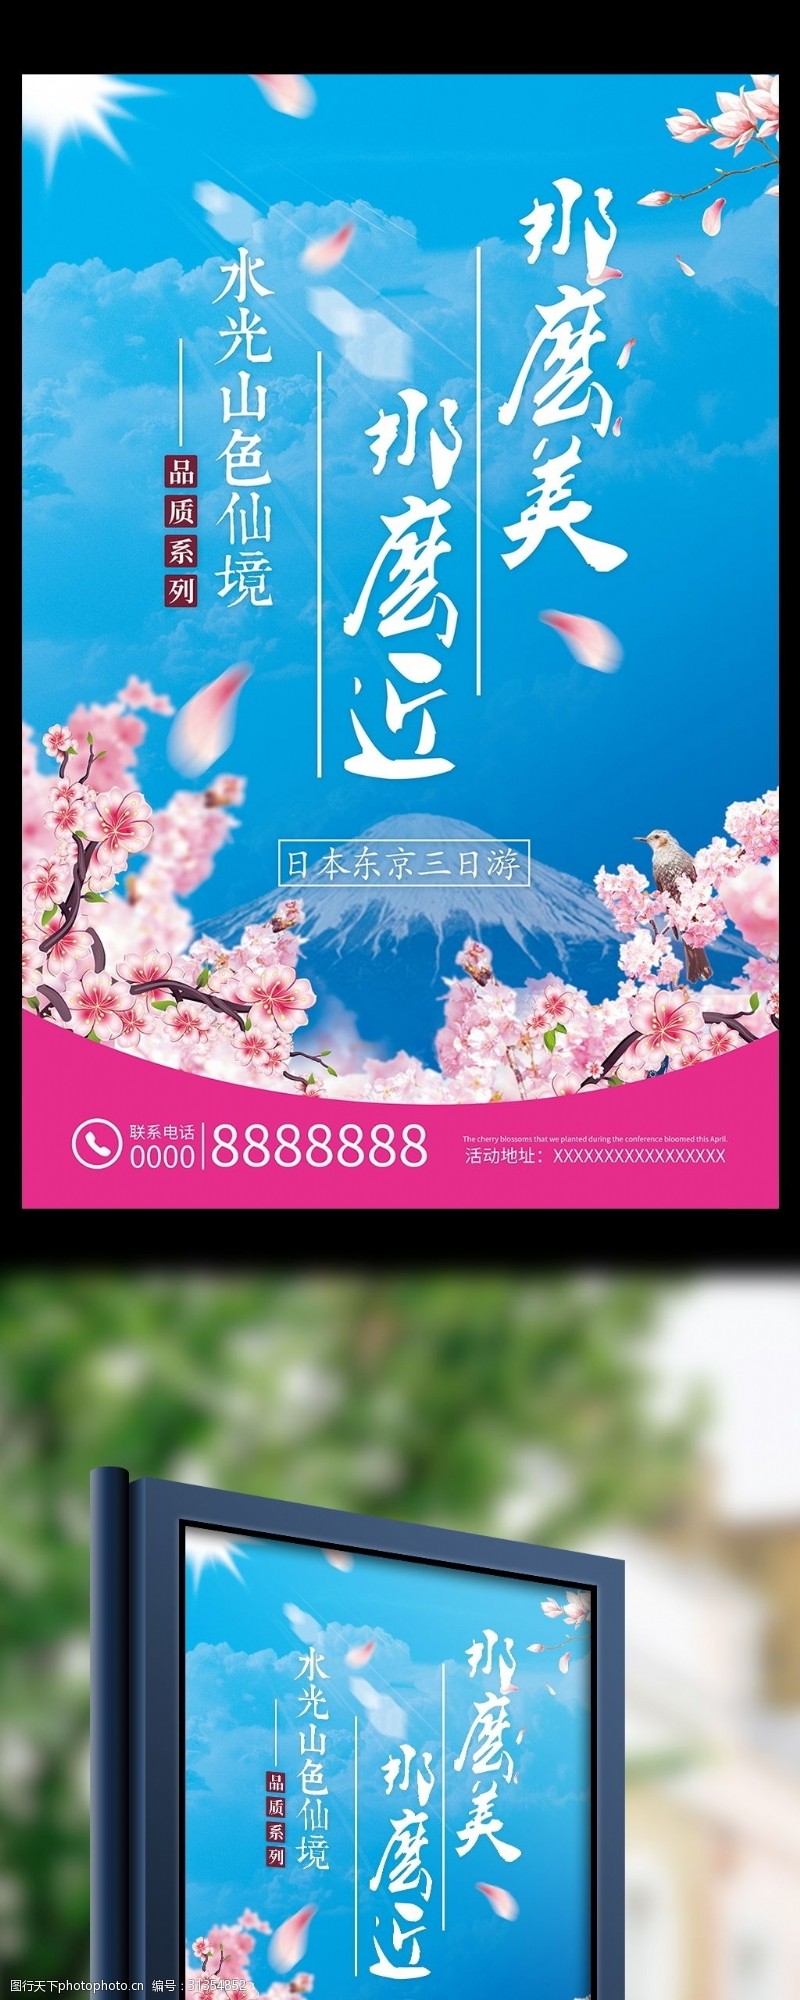 日本旅游广告日本旅游樱花梦幻蓝色天空